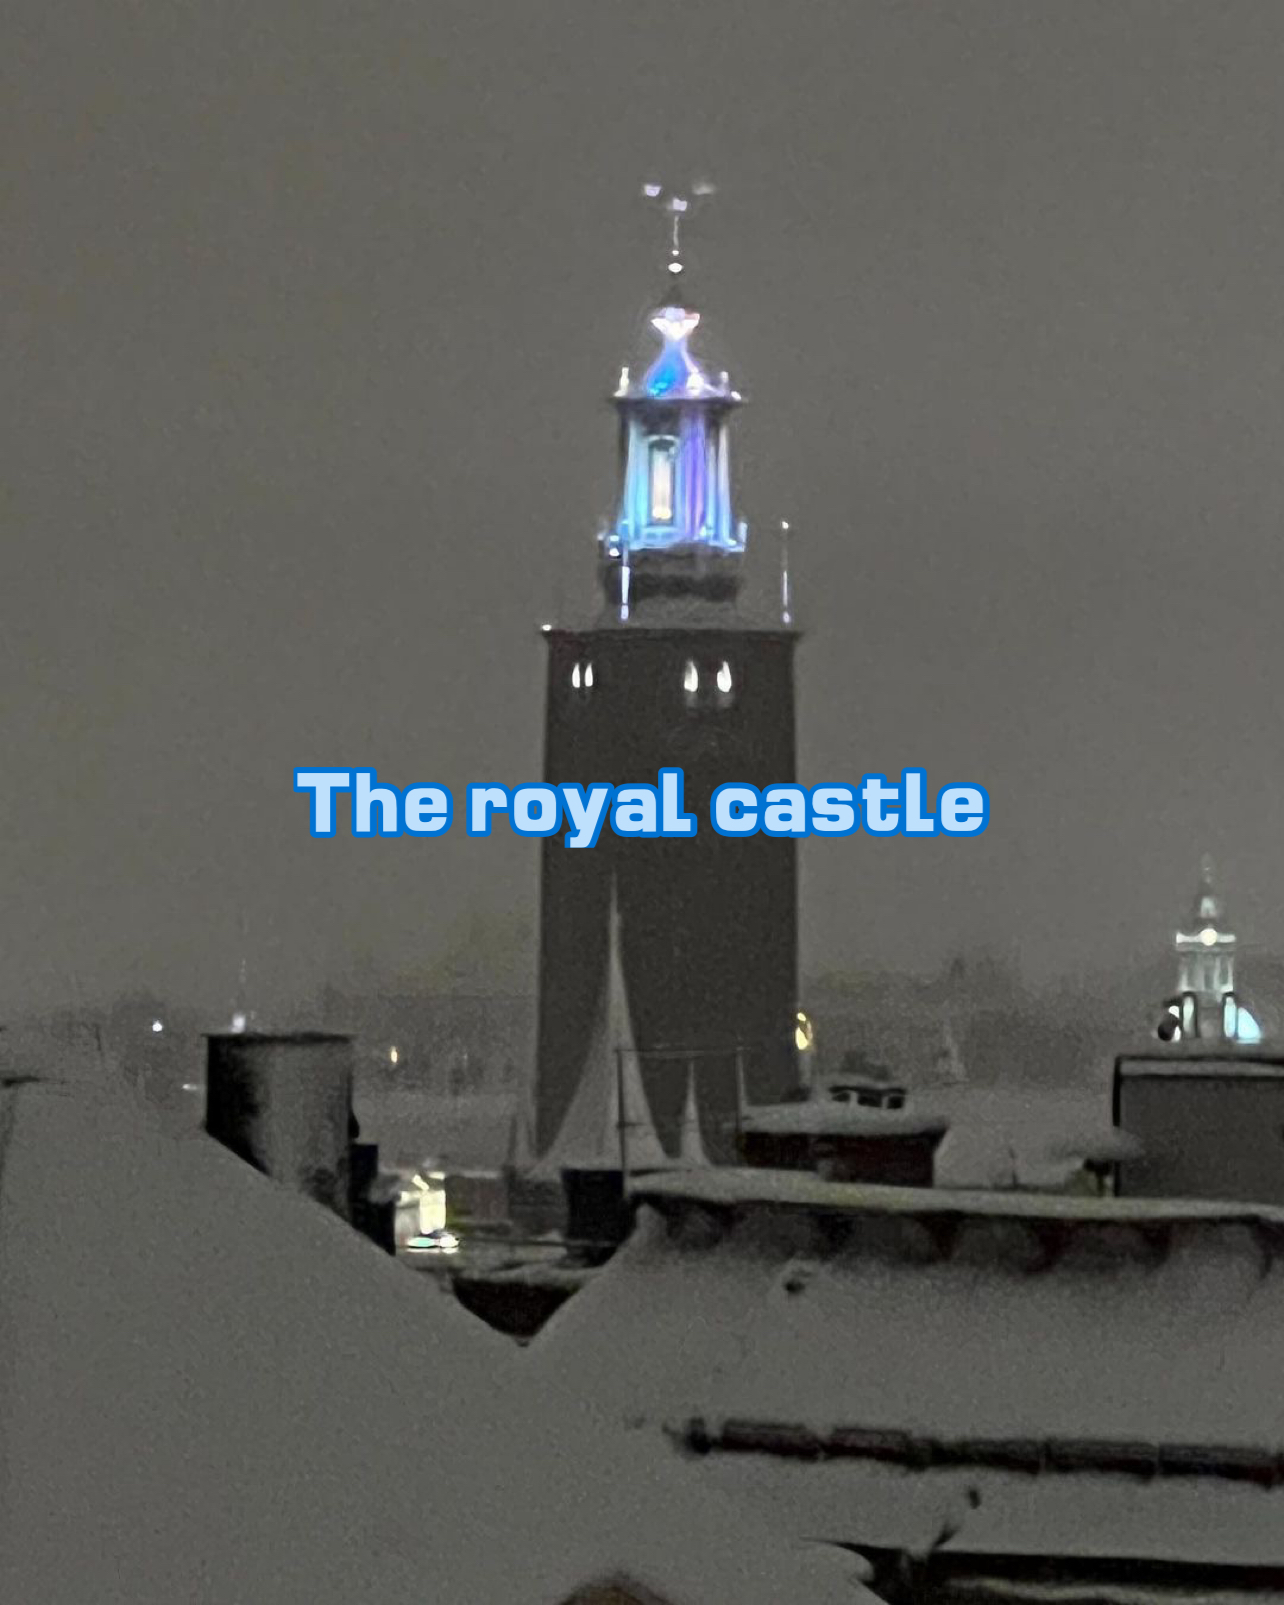 The royal castle